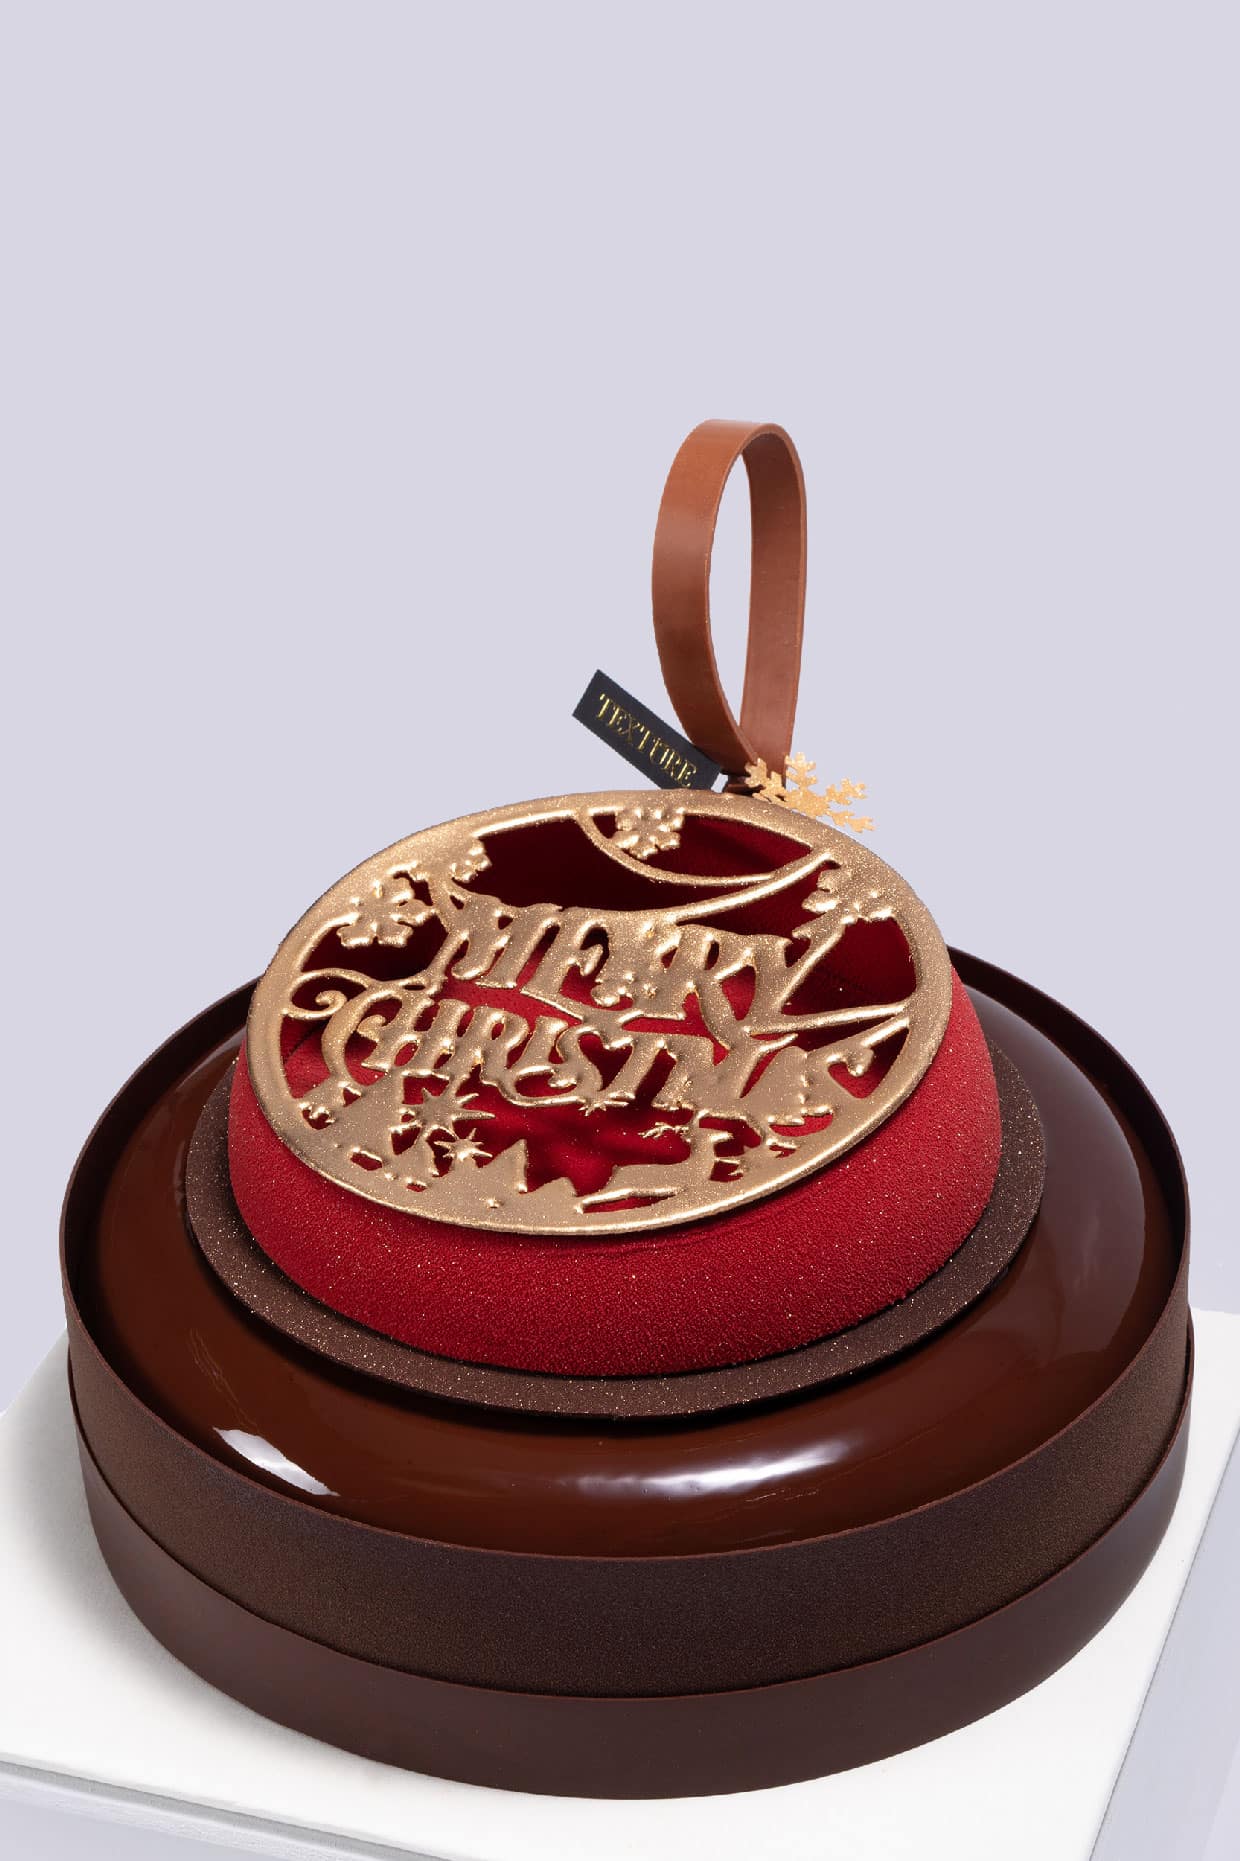 Christmas Themed De Noix Cake